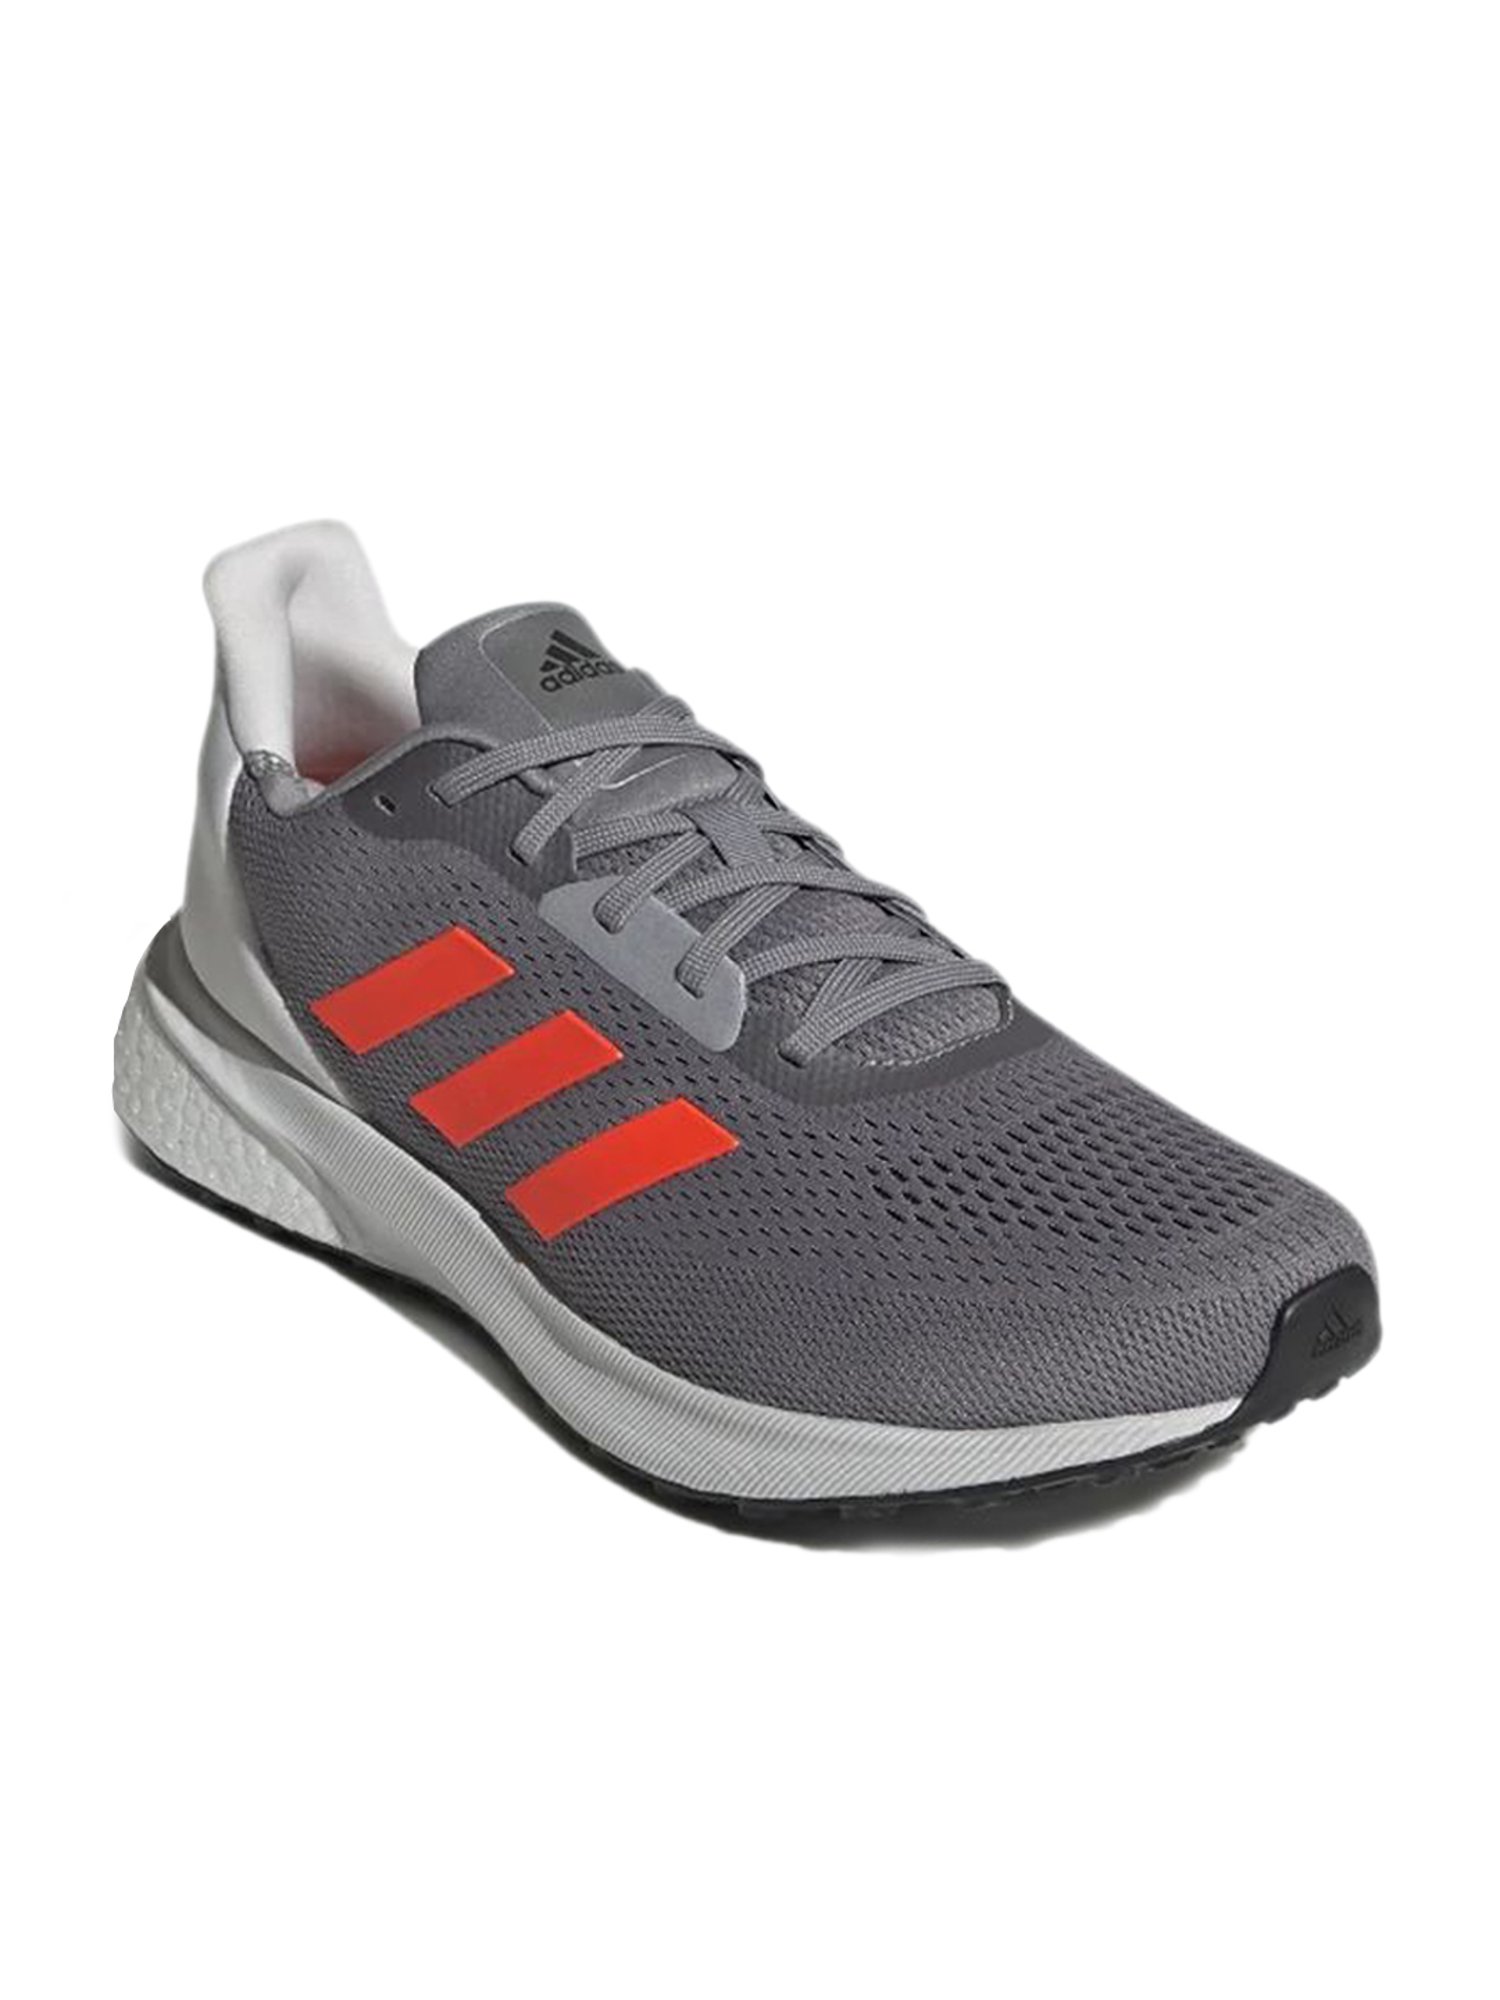 Buy Adidas Astrarun Grey Running Shoes 